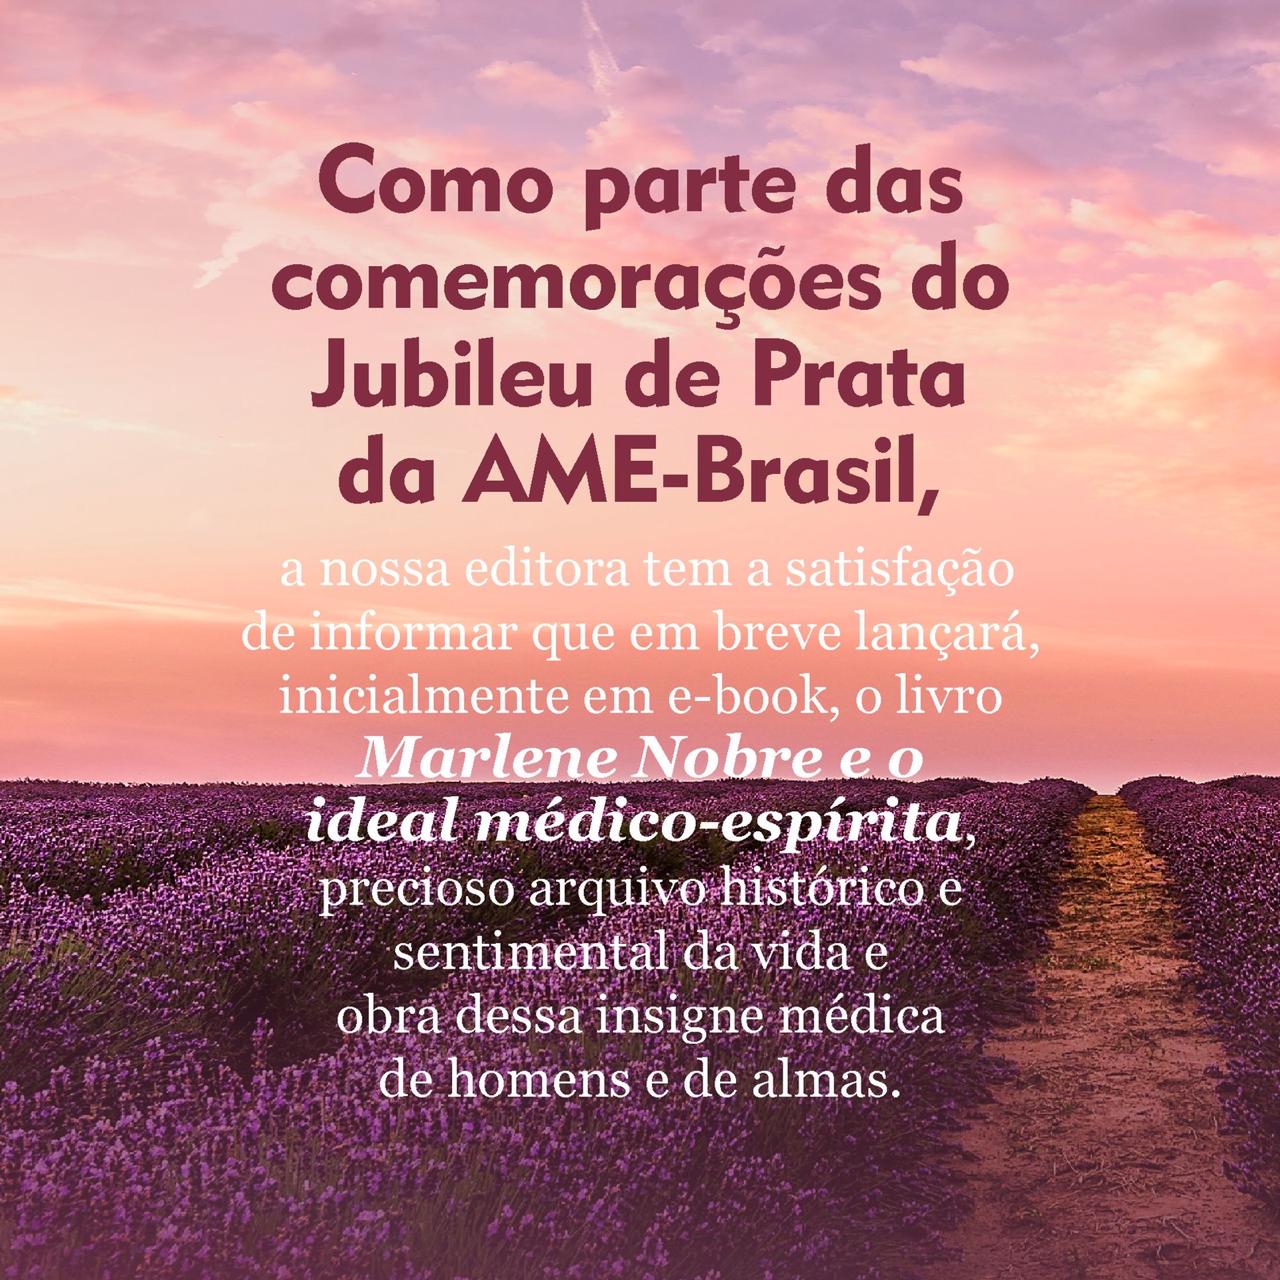 Jubileu de Prata da AME-Brasil